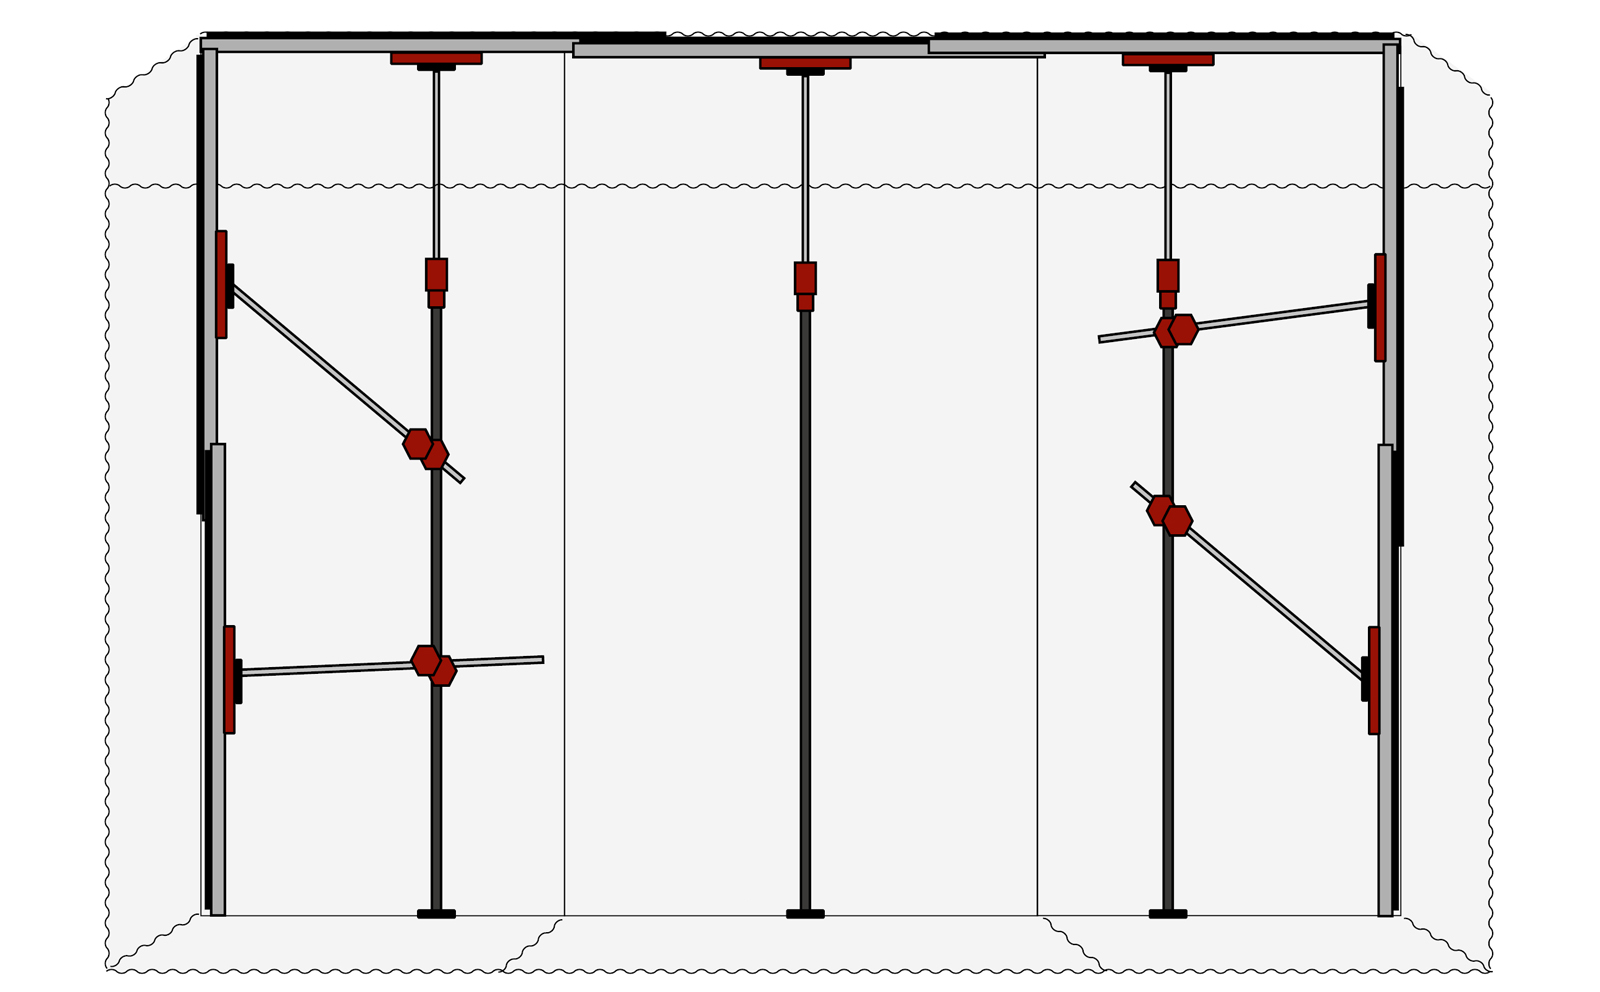 Staubschutzwand Folienwand Staubschutz Schmutzschleuse 4x10 m mit  Reißverschluss : : Baumarkt